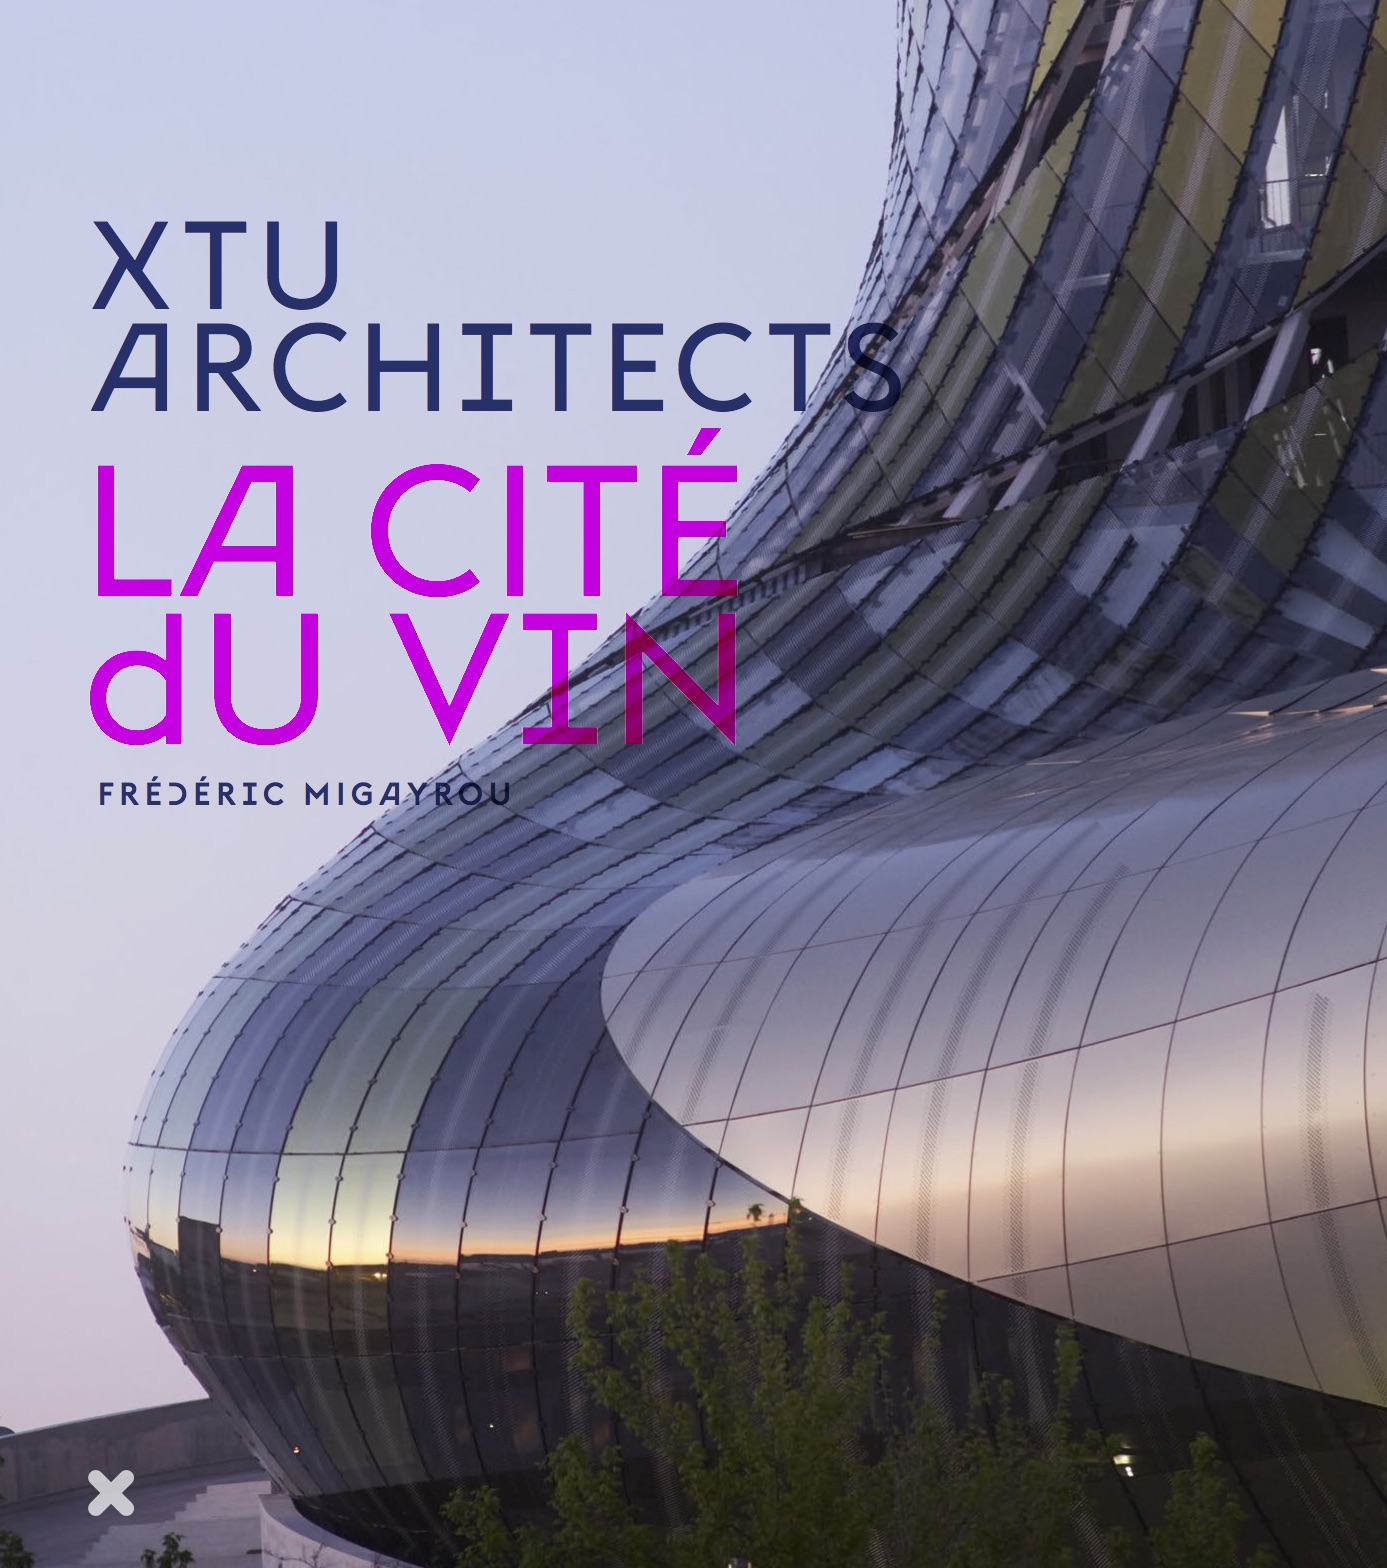 La Cité du Vin - XTU Architects -  Éditions HYX